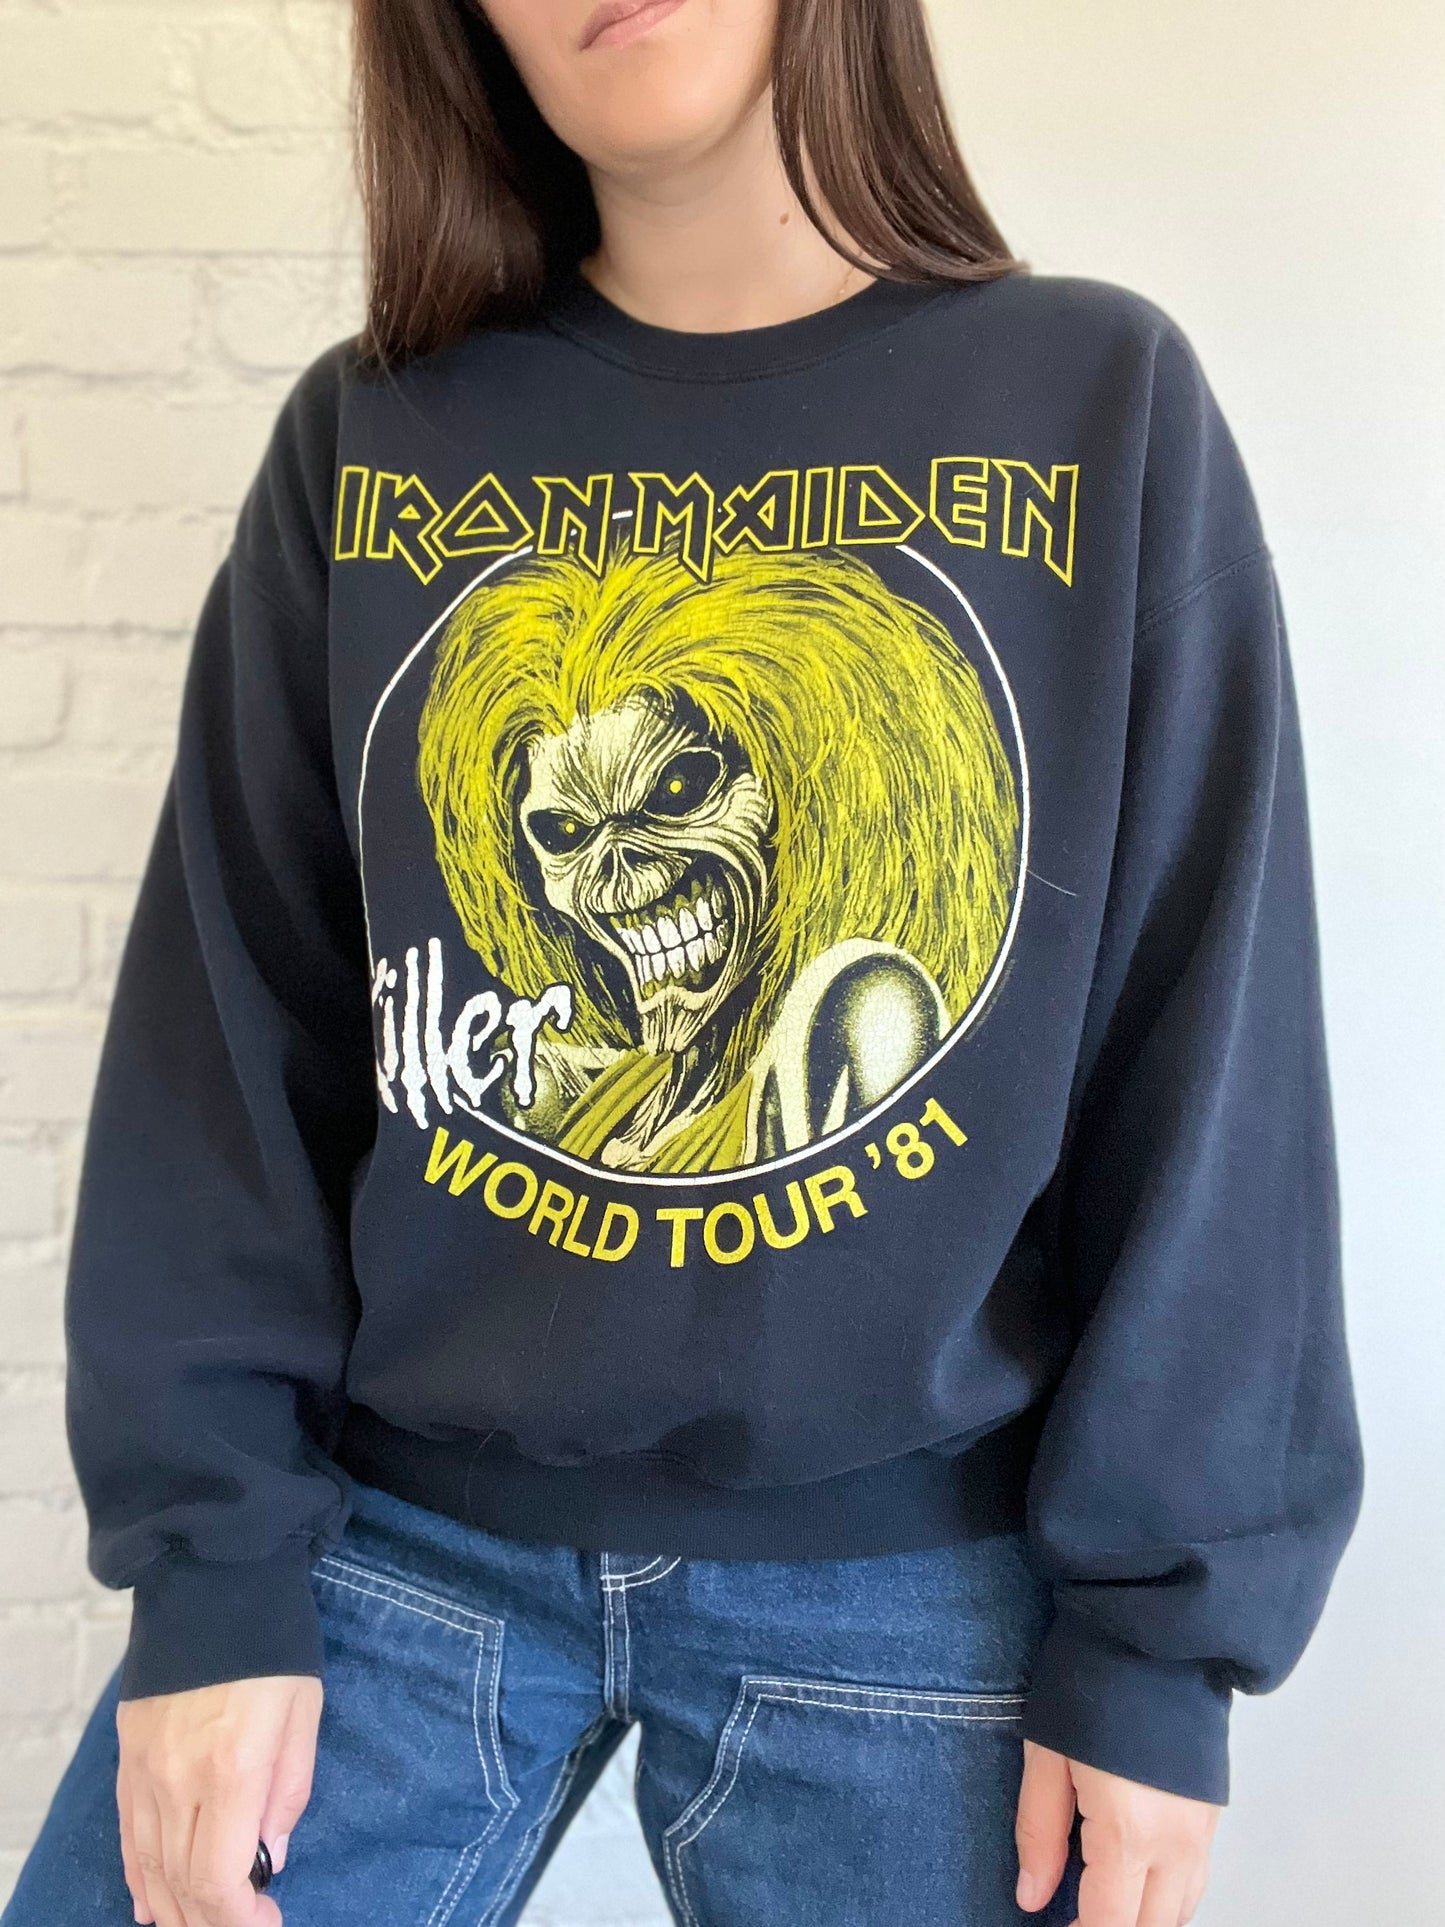 Iron Maiden '81 World Tour Crewneck - Size L